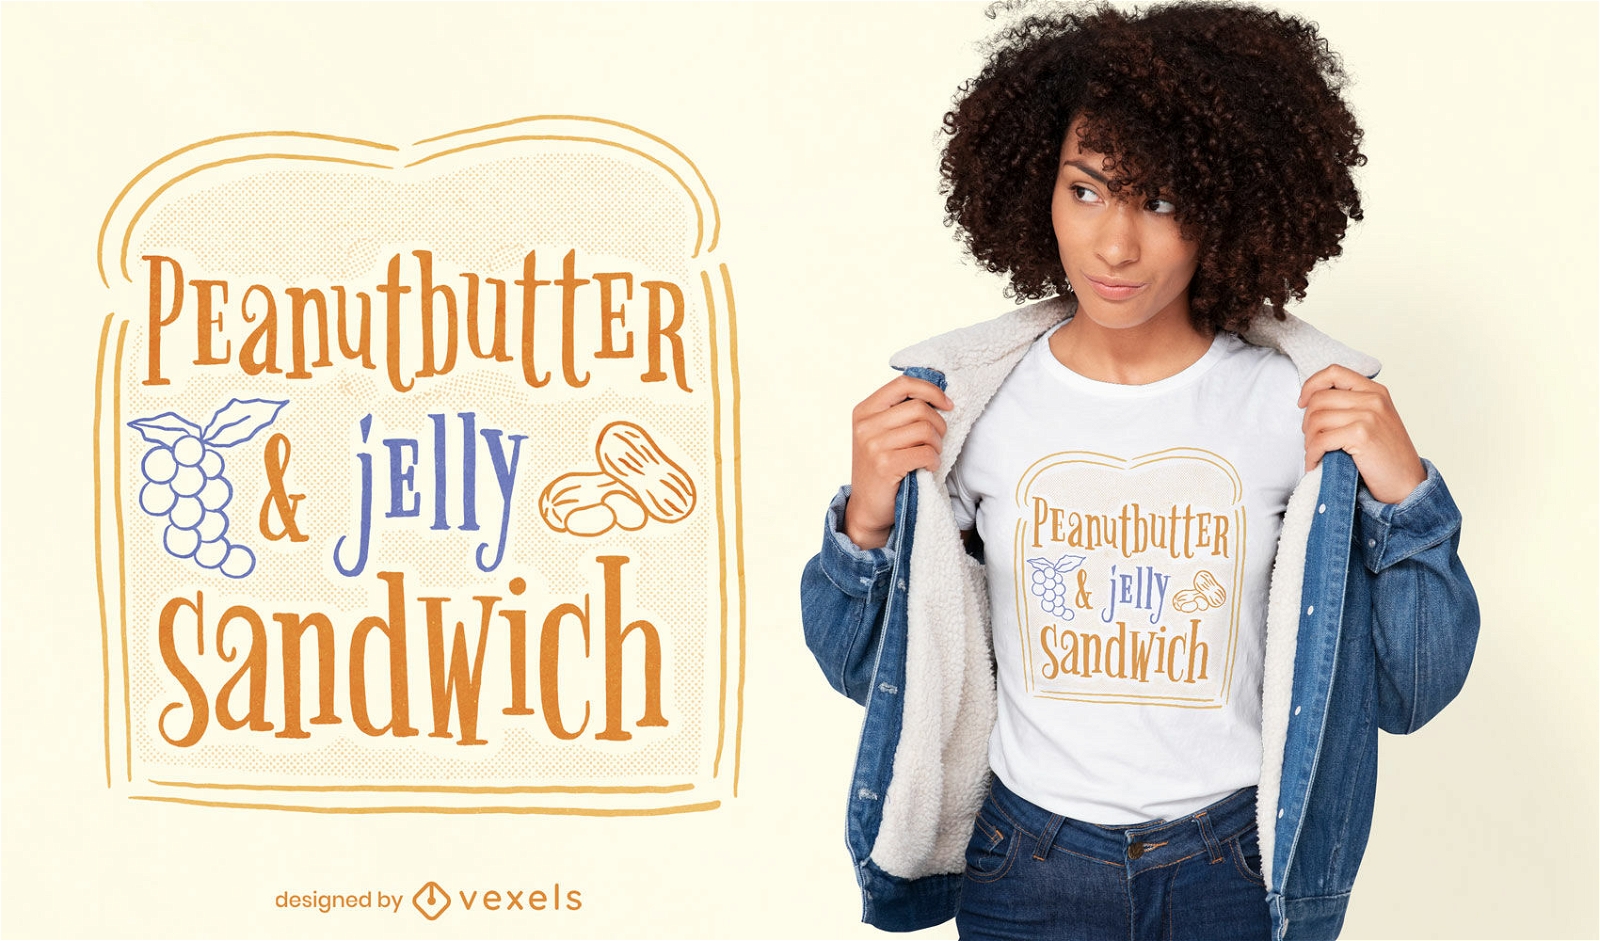 Peanut butter & jelly sandwich t-shirt design